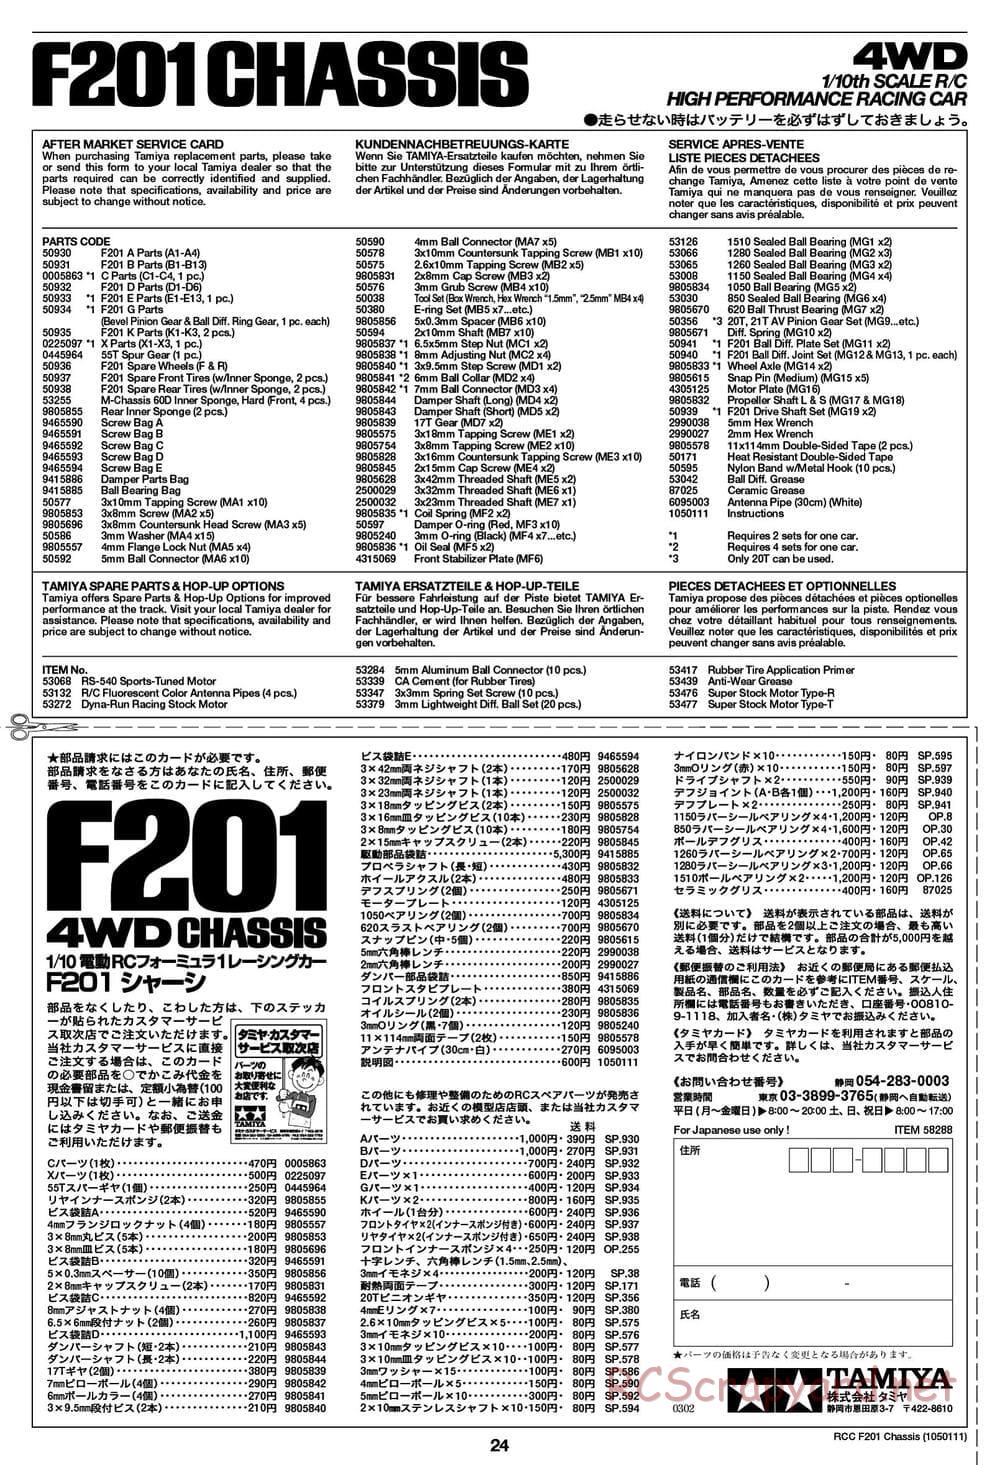 Tamiya - F201 Chassis - Manual - Page 24